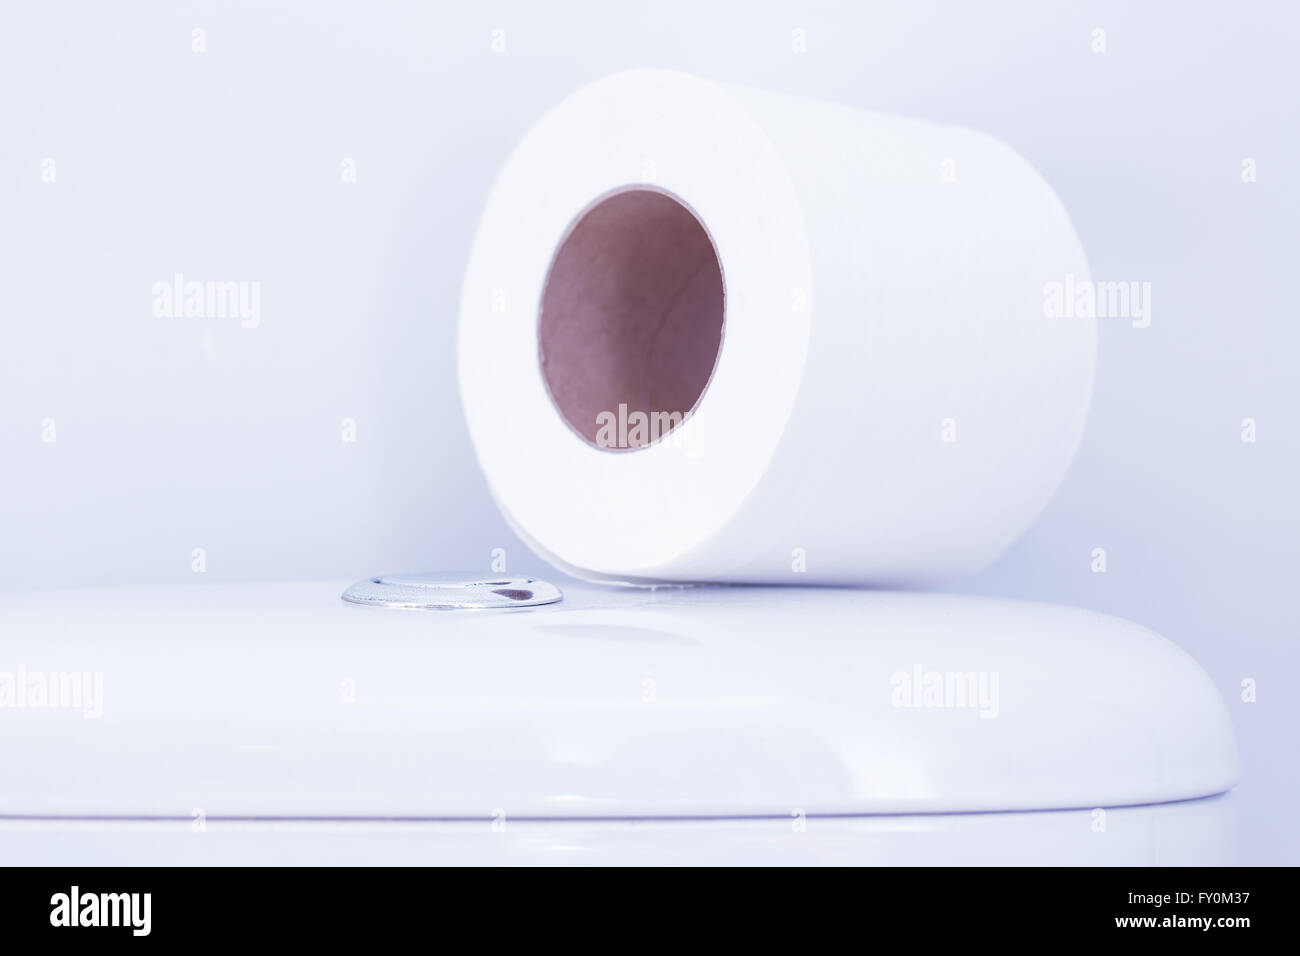 Hygienic paper on white toilet tank closeup Stock Photo